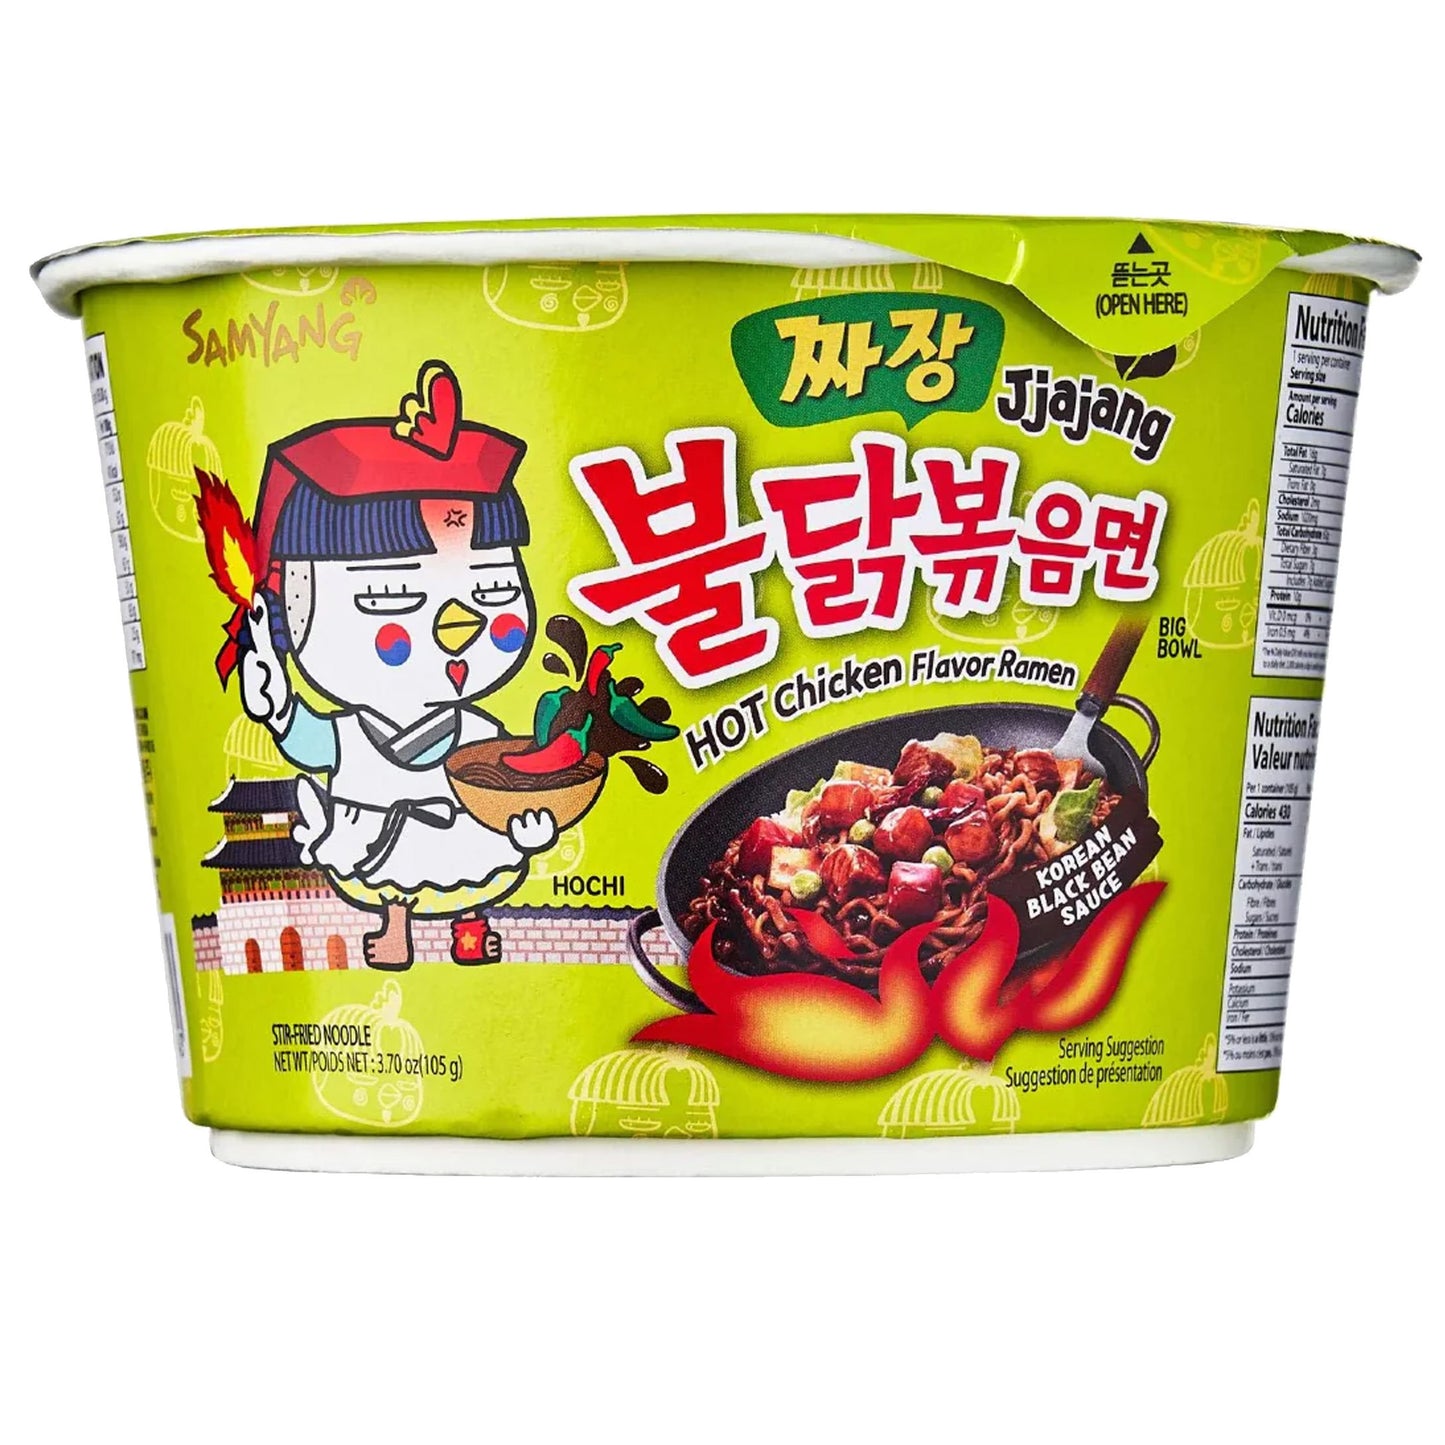 Samyang Big Bowl Jjajang Korean Black Bean Sauce | 8 x 105g